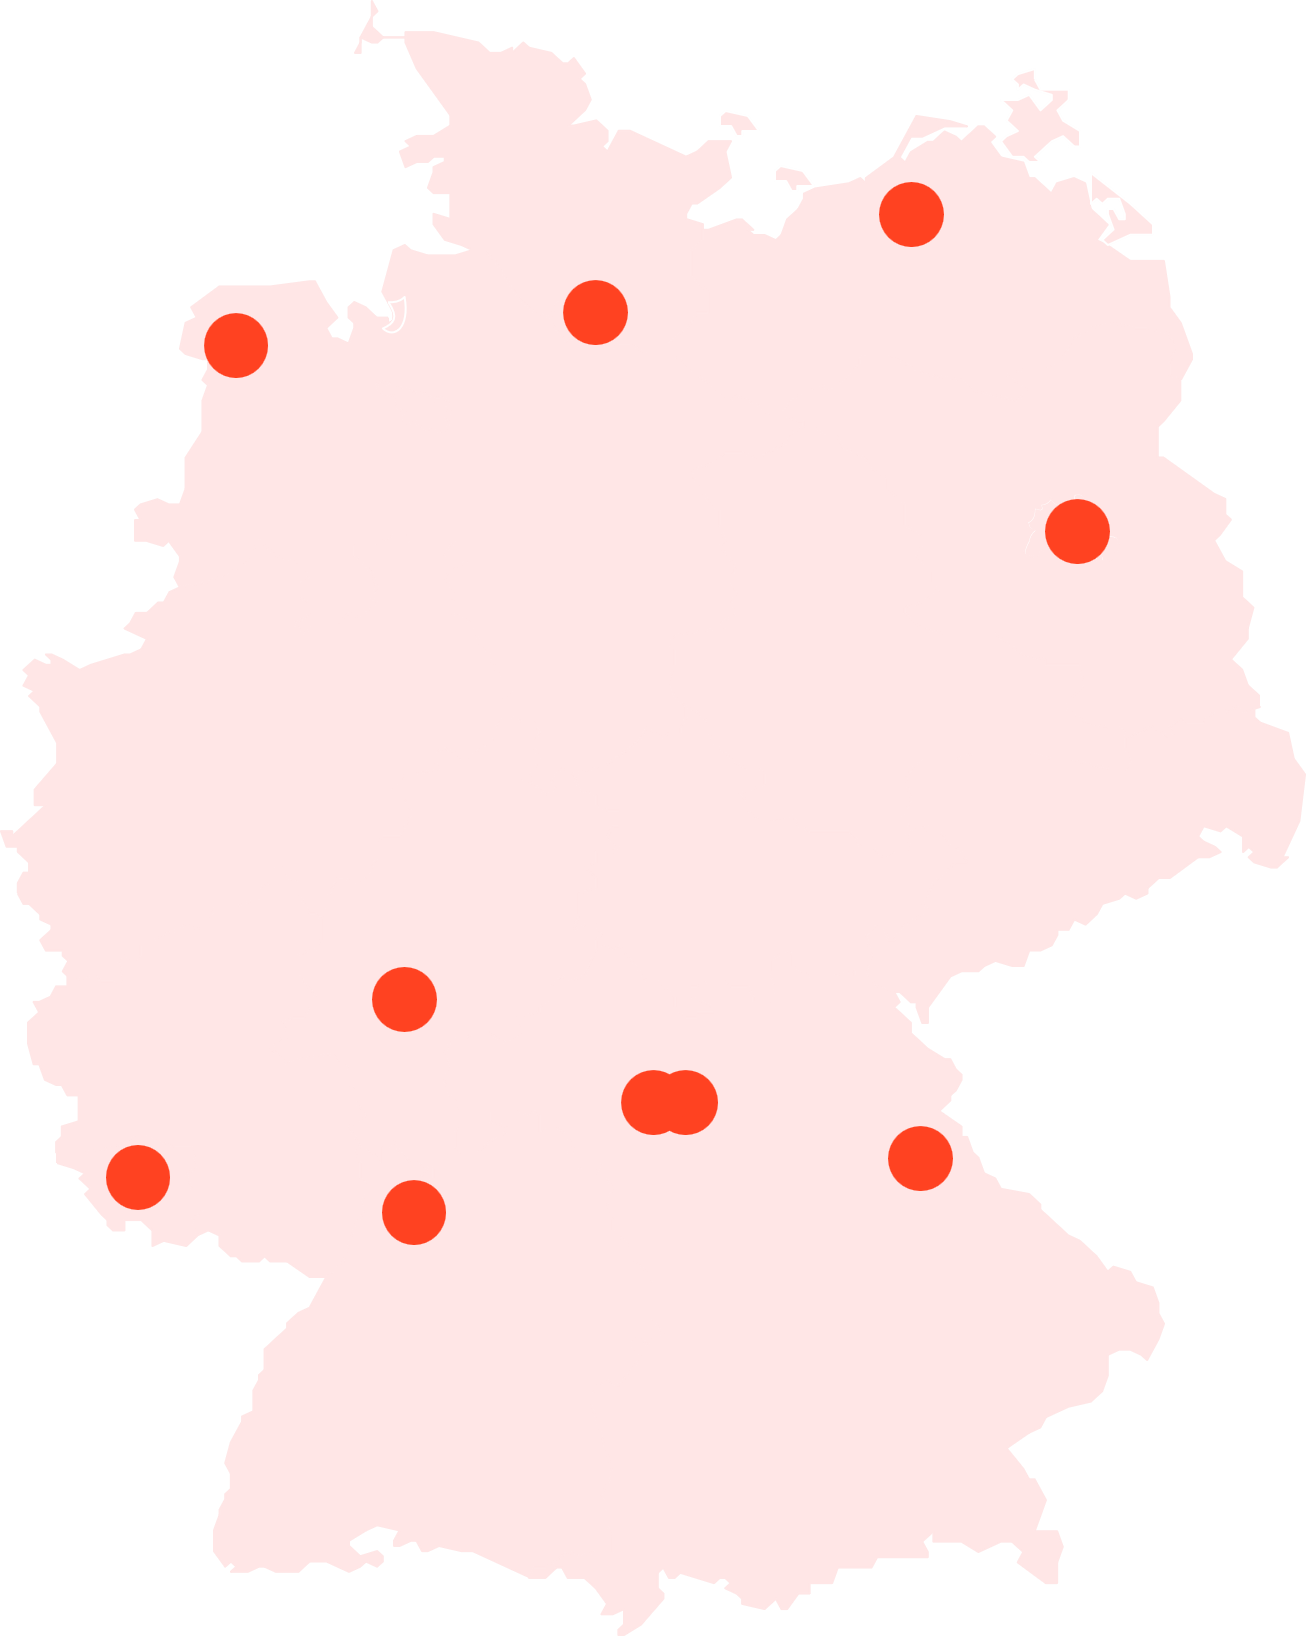 Karte von Deutschland mit markierten Standorten der Teccle Group